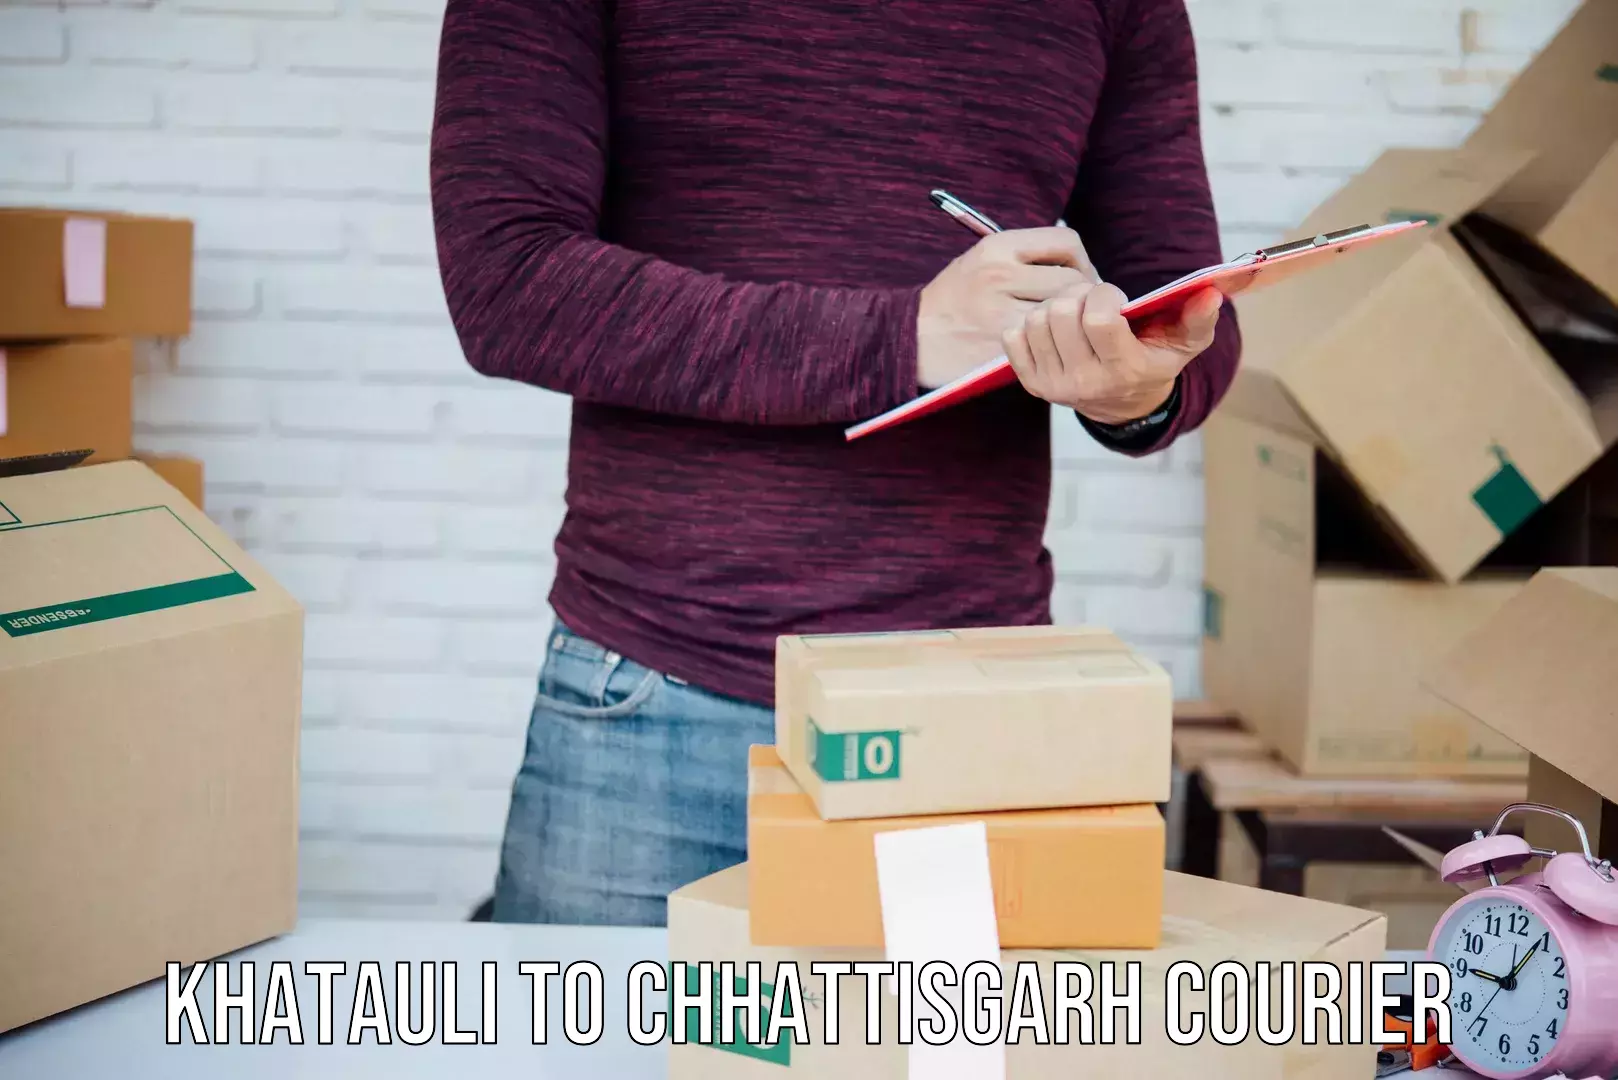 Cargo delivery service Khatauli to Chhattisgarh